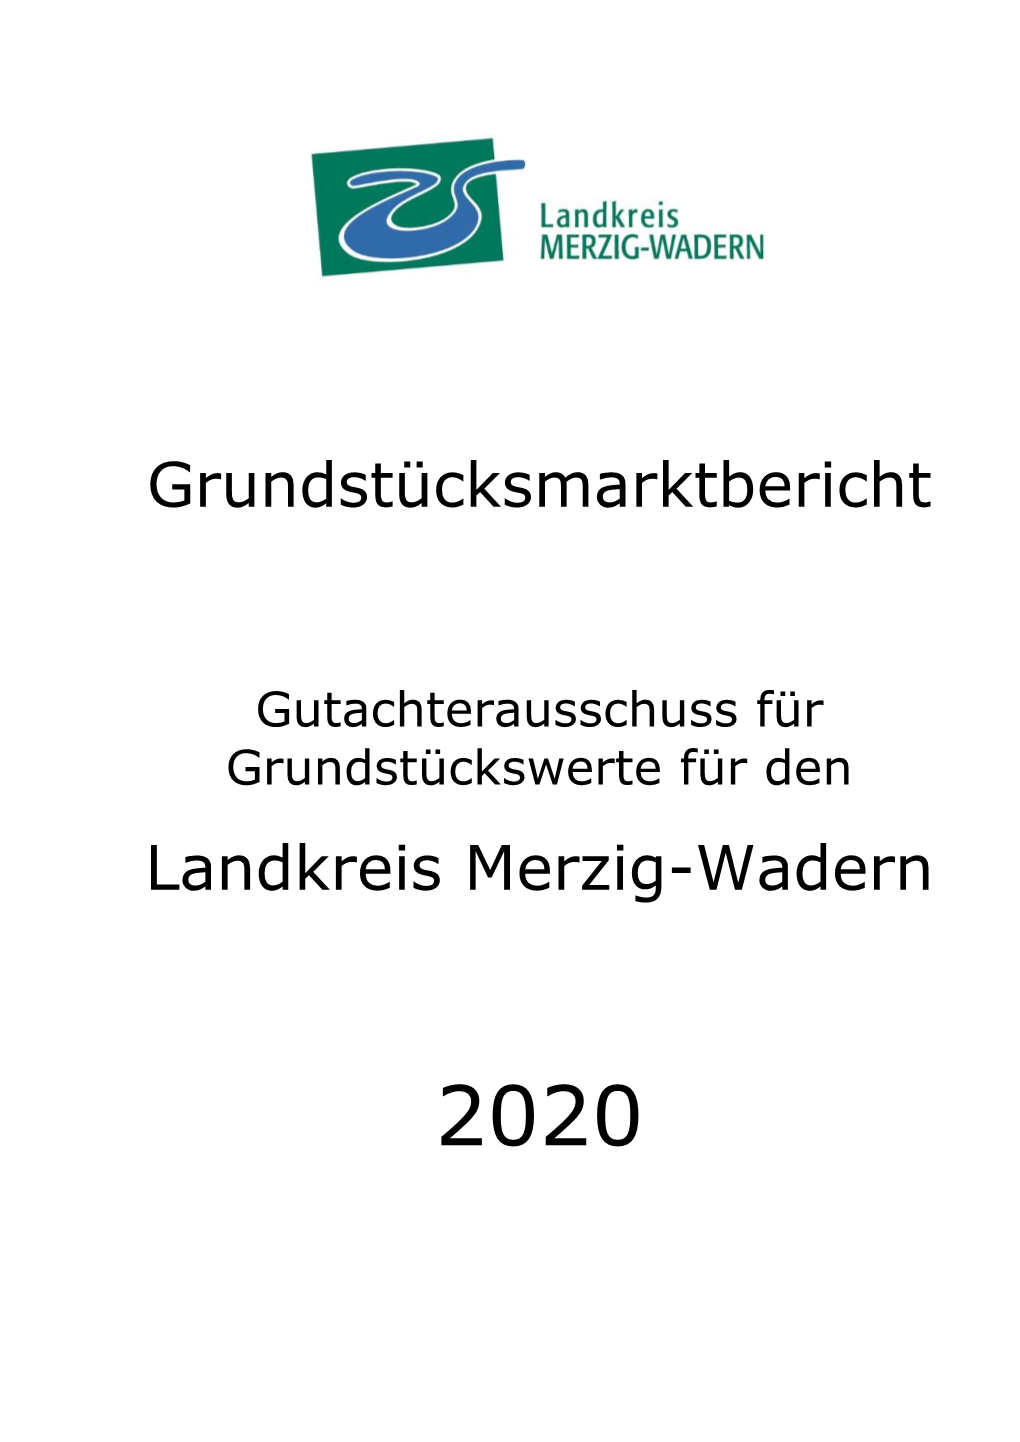 Grundstücksmarktbericht Landkreis Merzig-Wadern